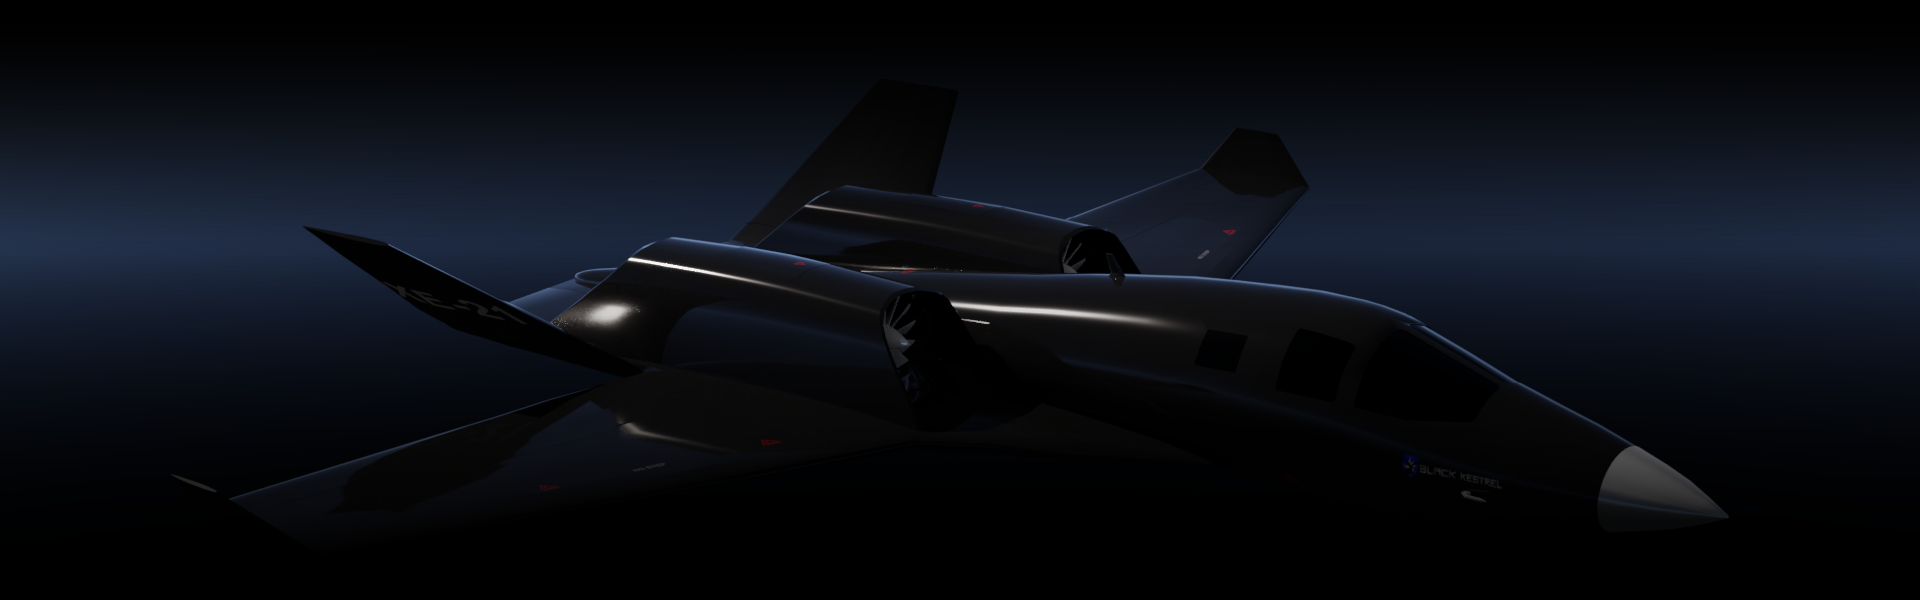 XE-21 dark hanger front view